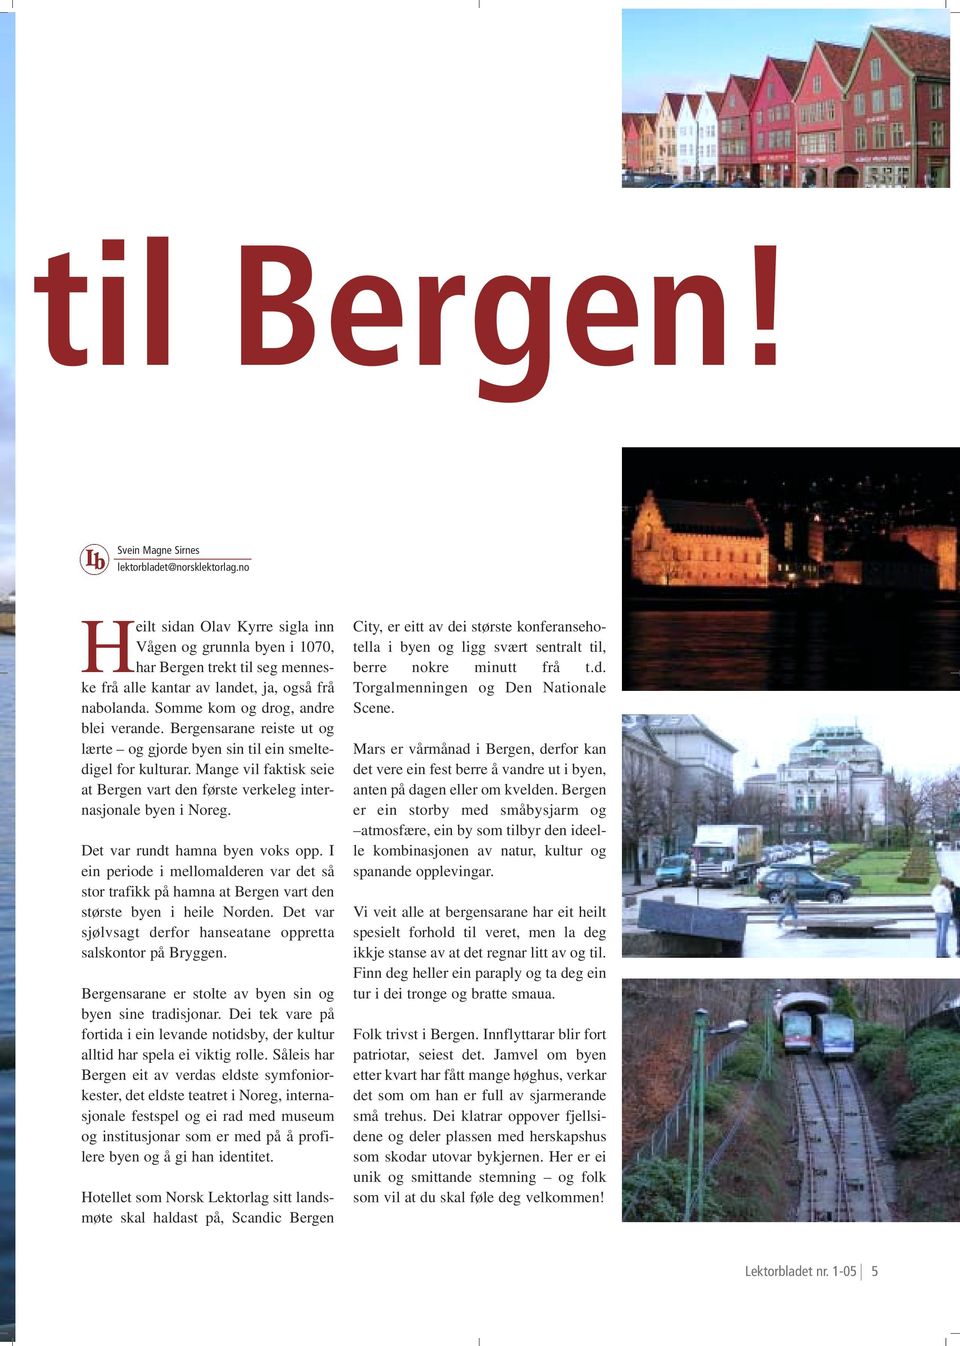 Bergensarane reiste ut og lærte og gjorde byen sin til ein smeltedigel for kulturar. Mange vil faktisk seie at Bergen vart den første verkeleg internasjonale byen i Noreg.